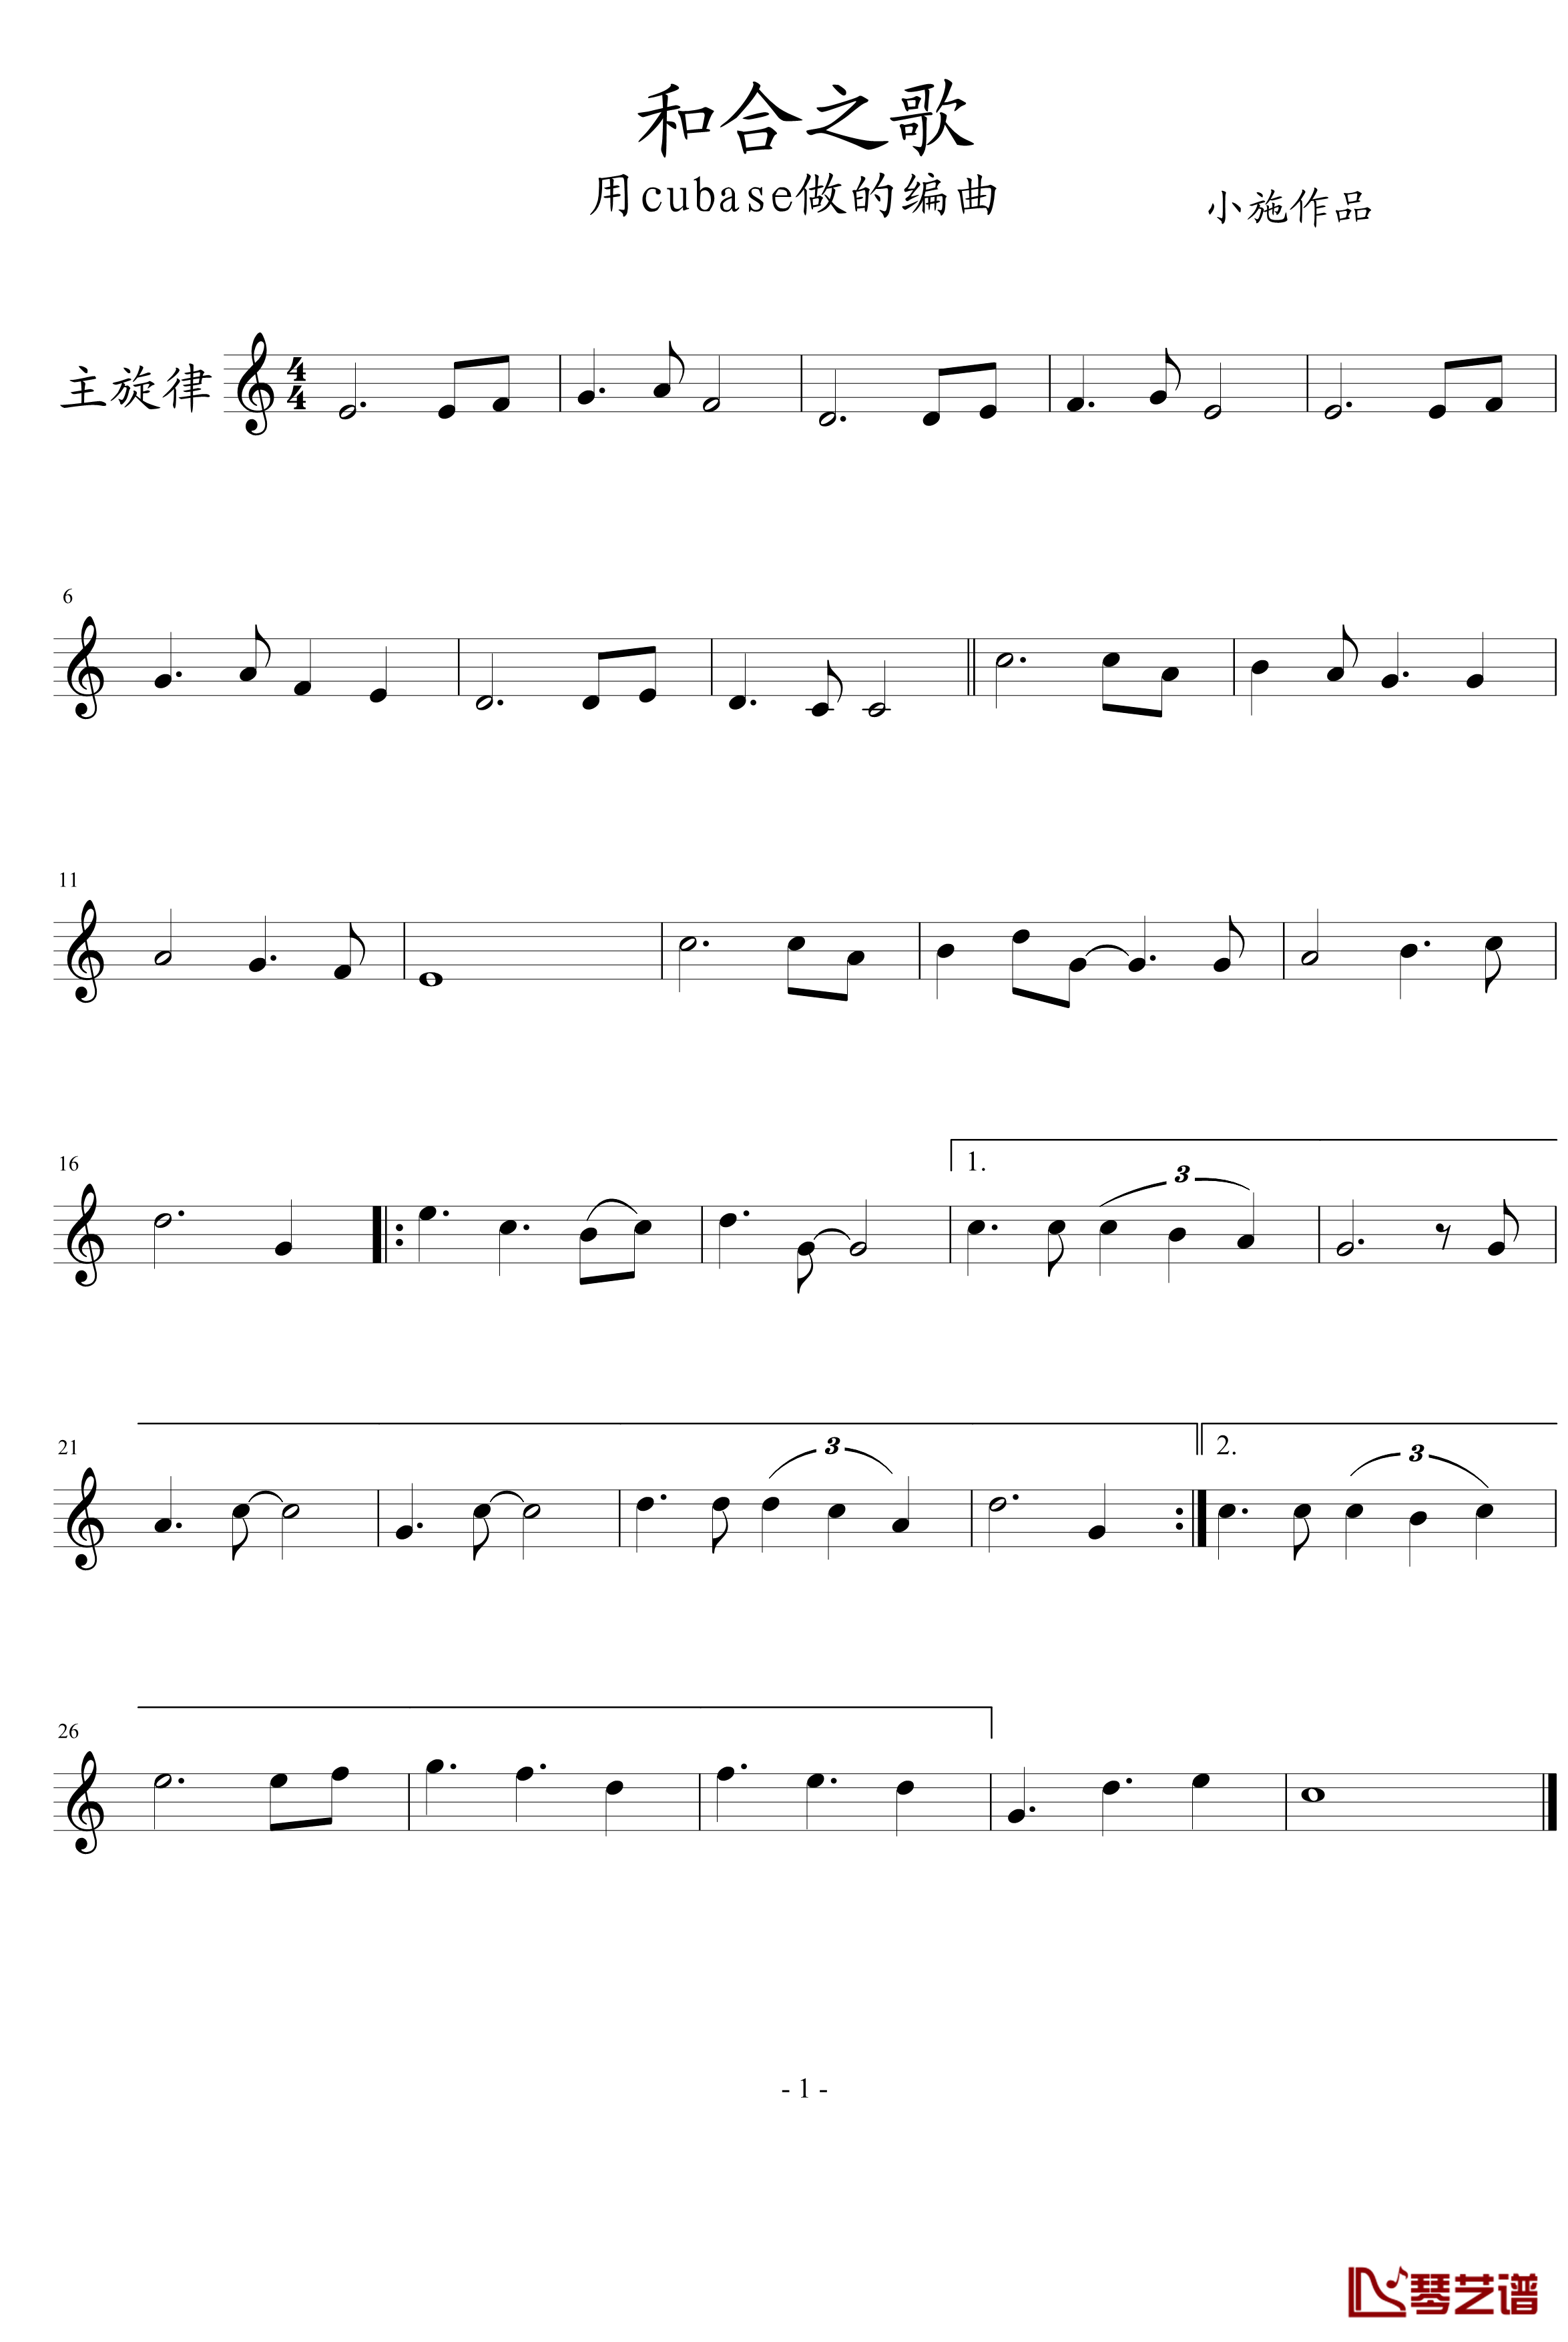 和合之歌钢琴谱-第一次用cubase做的歌曲-peterkingily1